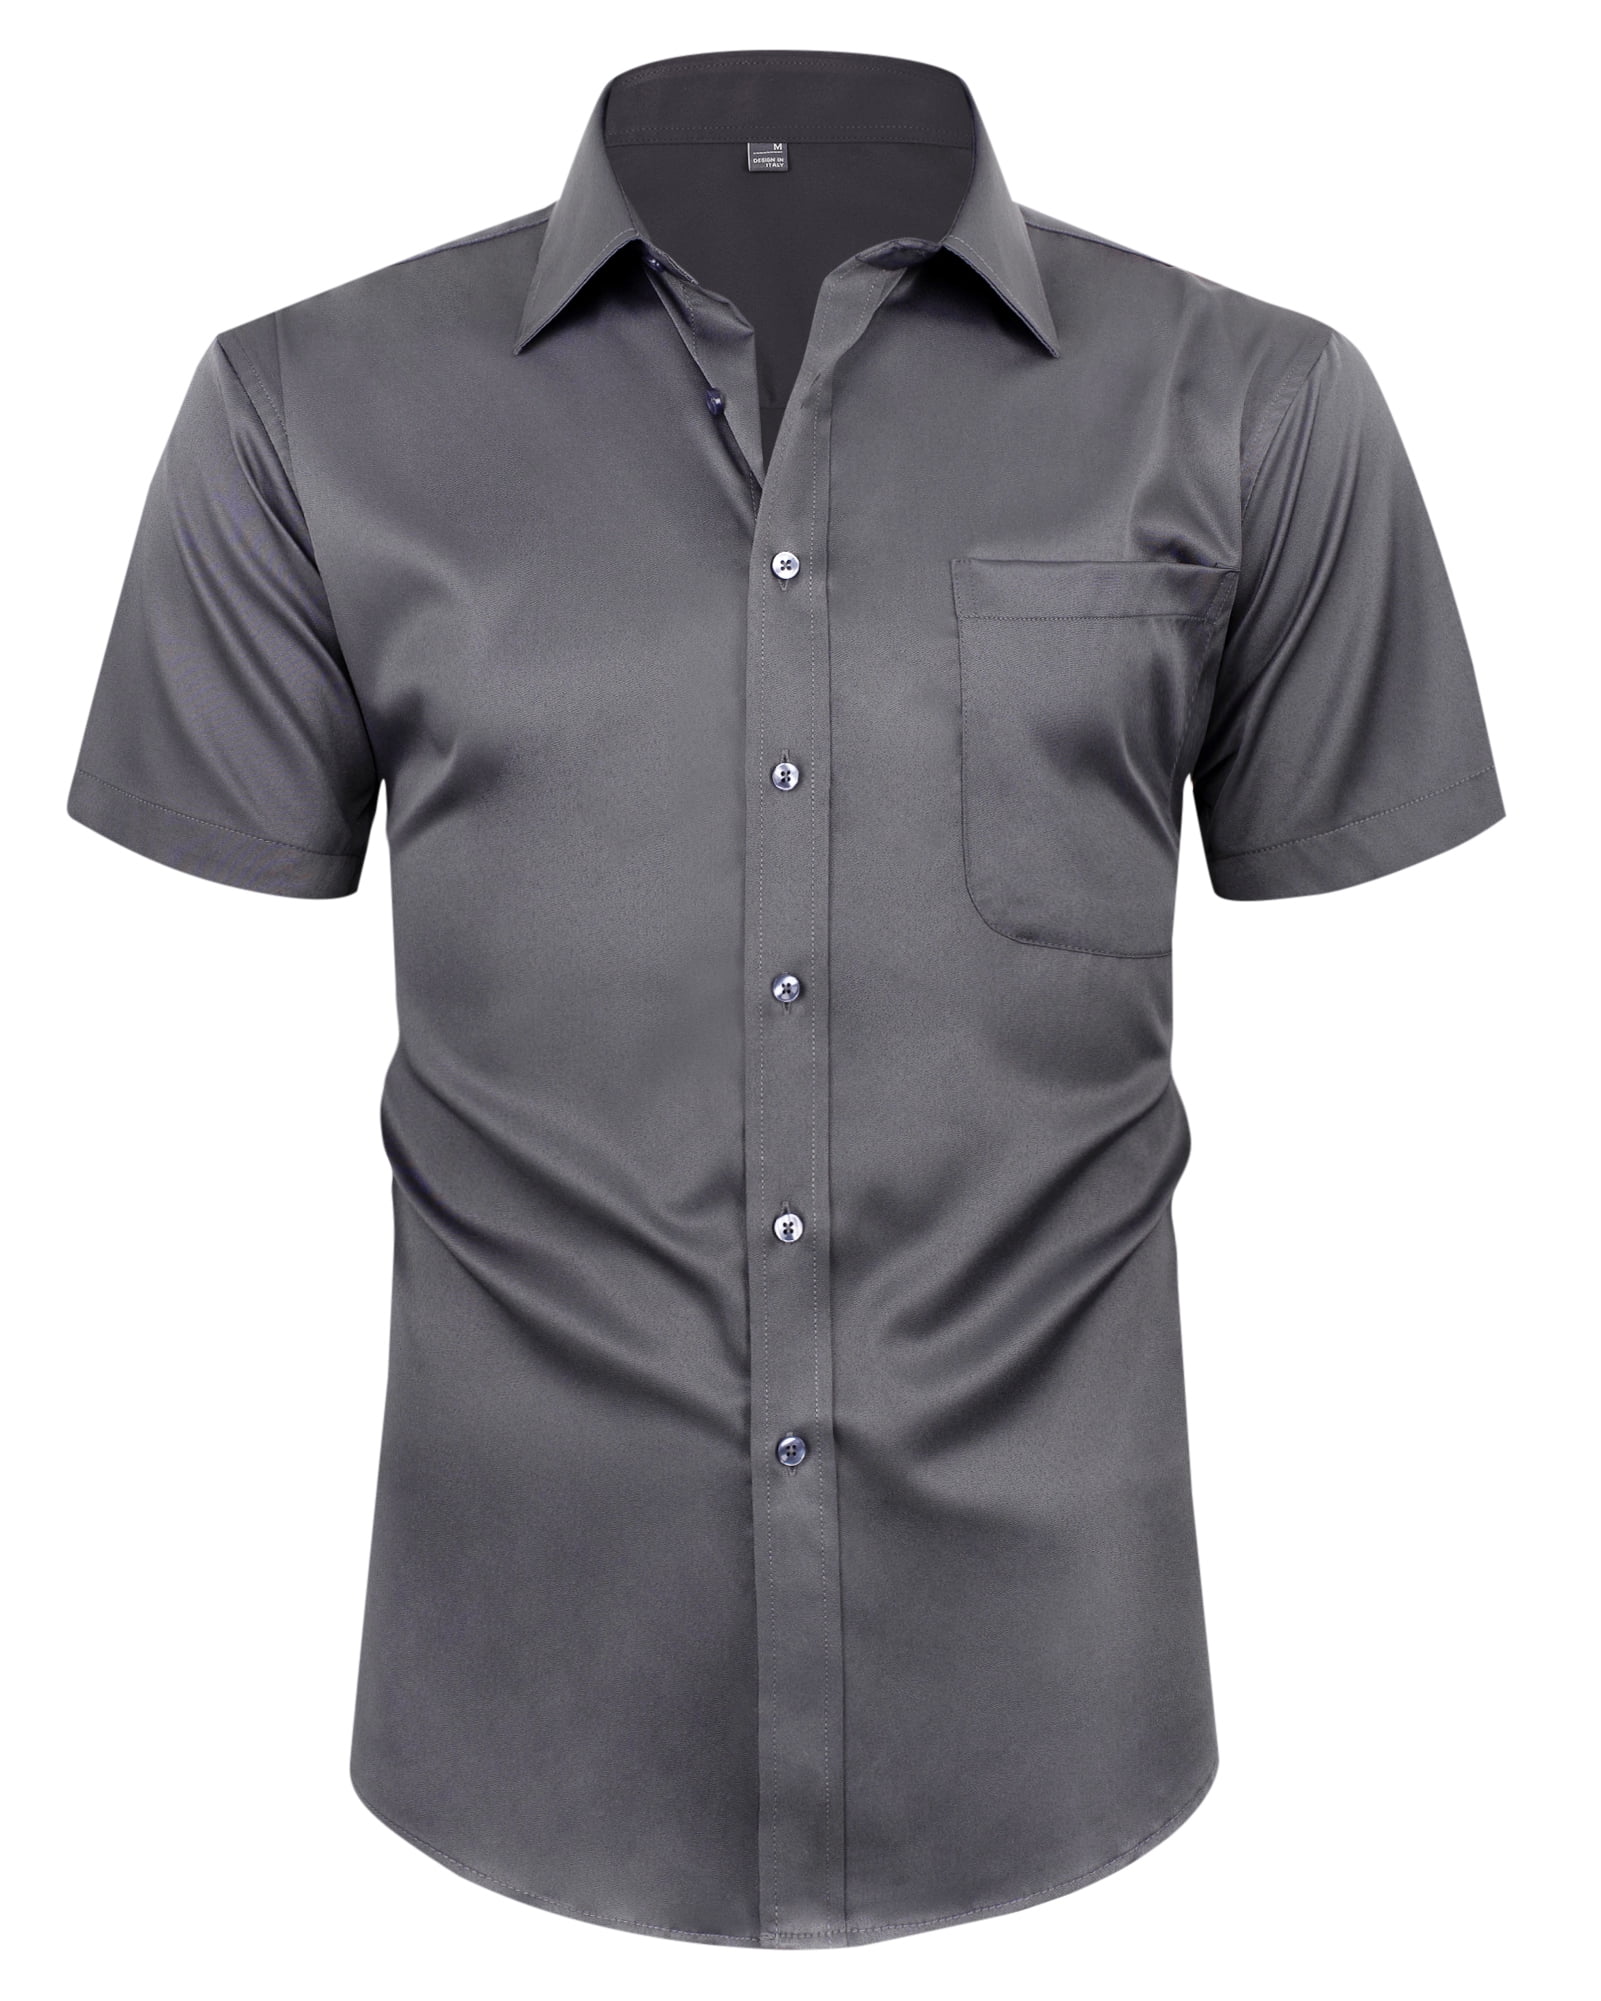 Alimens & Gentle Men's Short Sleeve Business Shirts Summer Dress Shirts ...